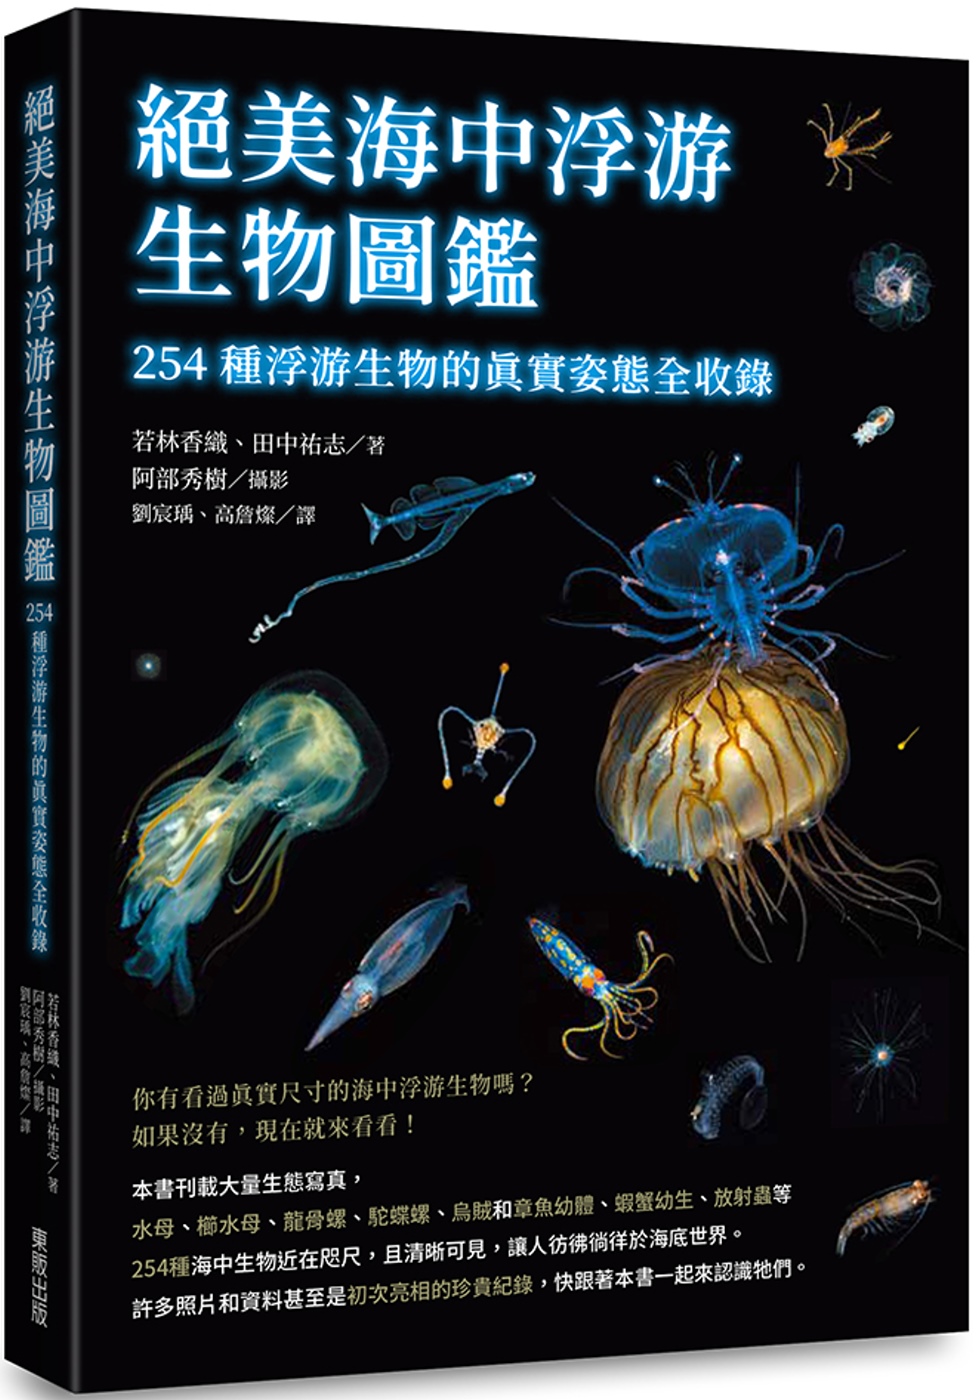 絕美海中浮游生物圖鑑：254種浮游生物的真實姿態全收錄